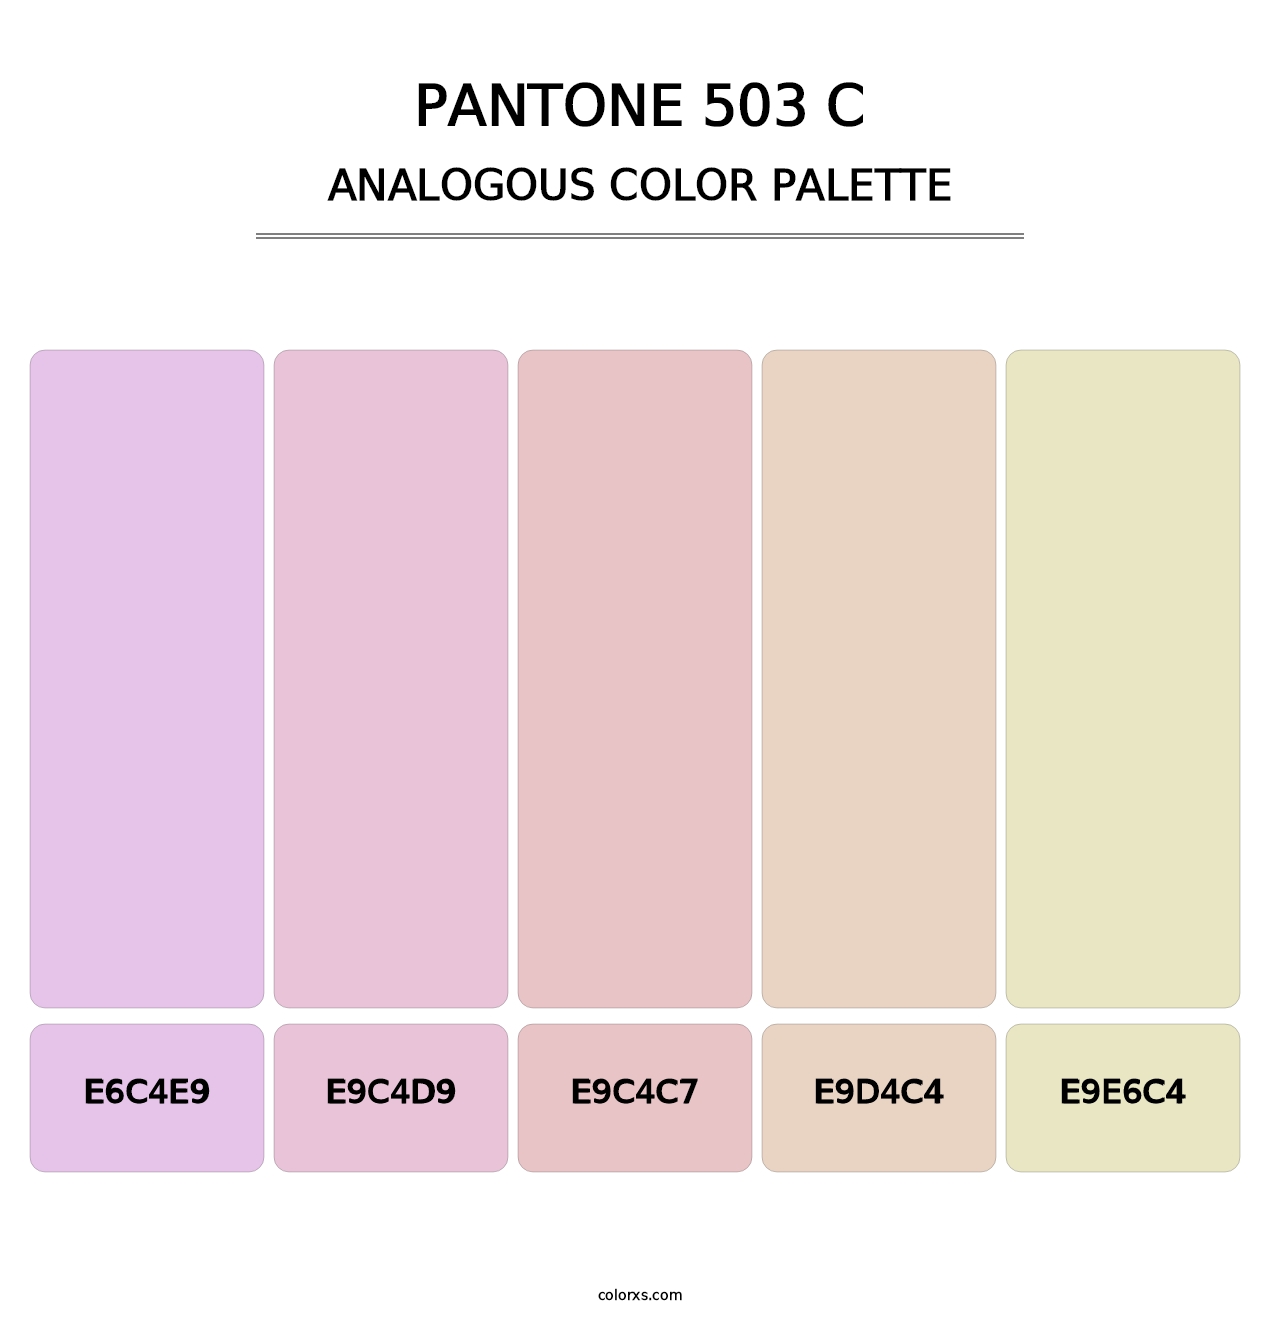 PANTONE 503 C - Analogous Color Palette